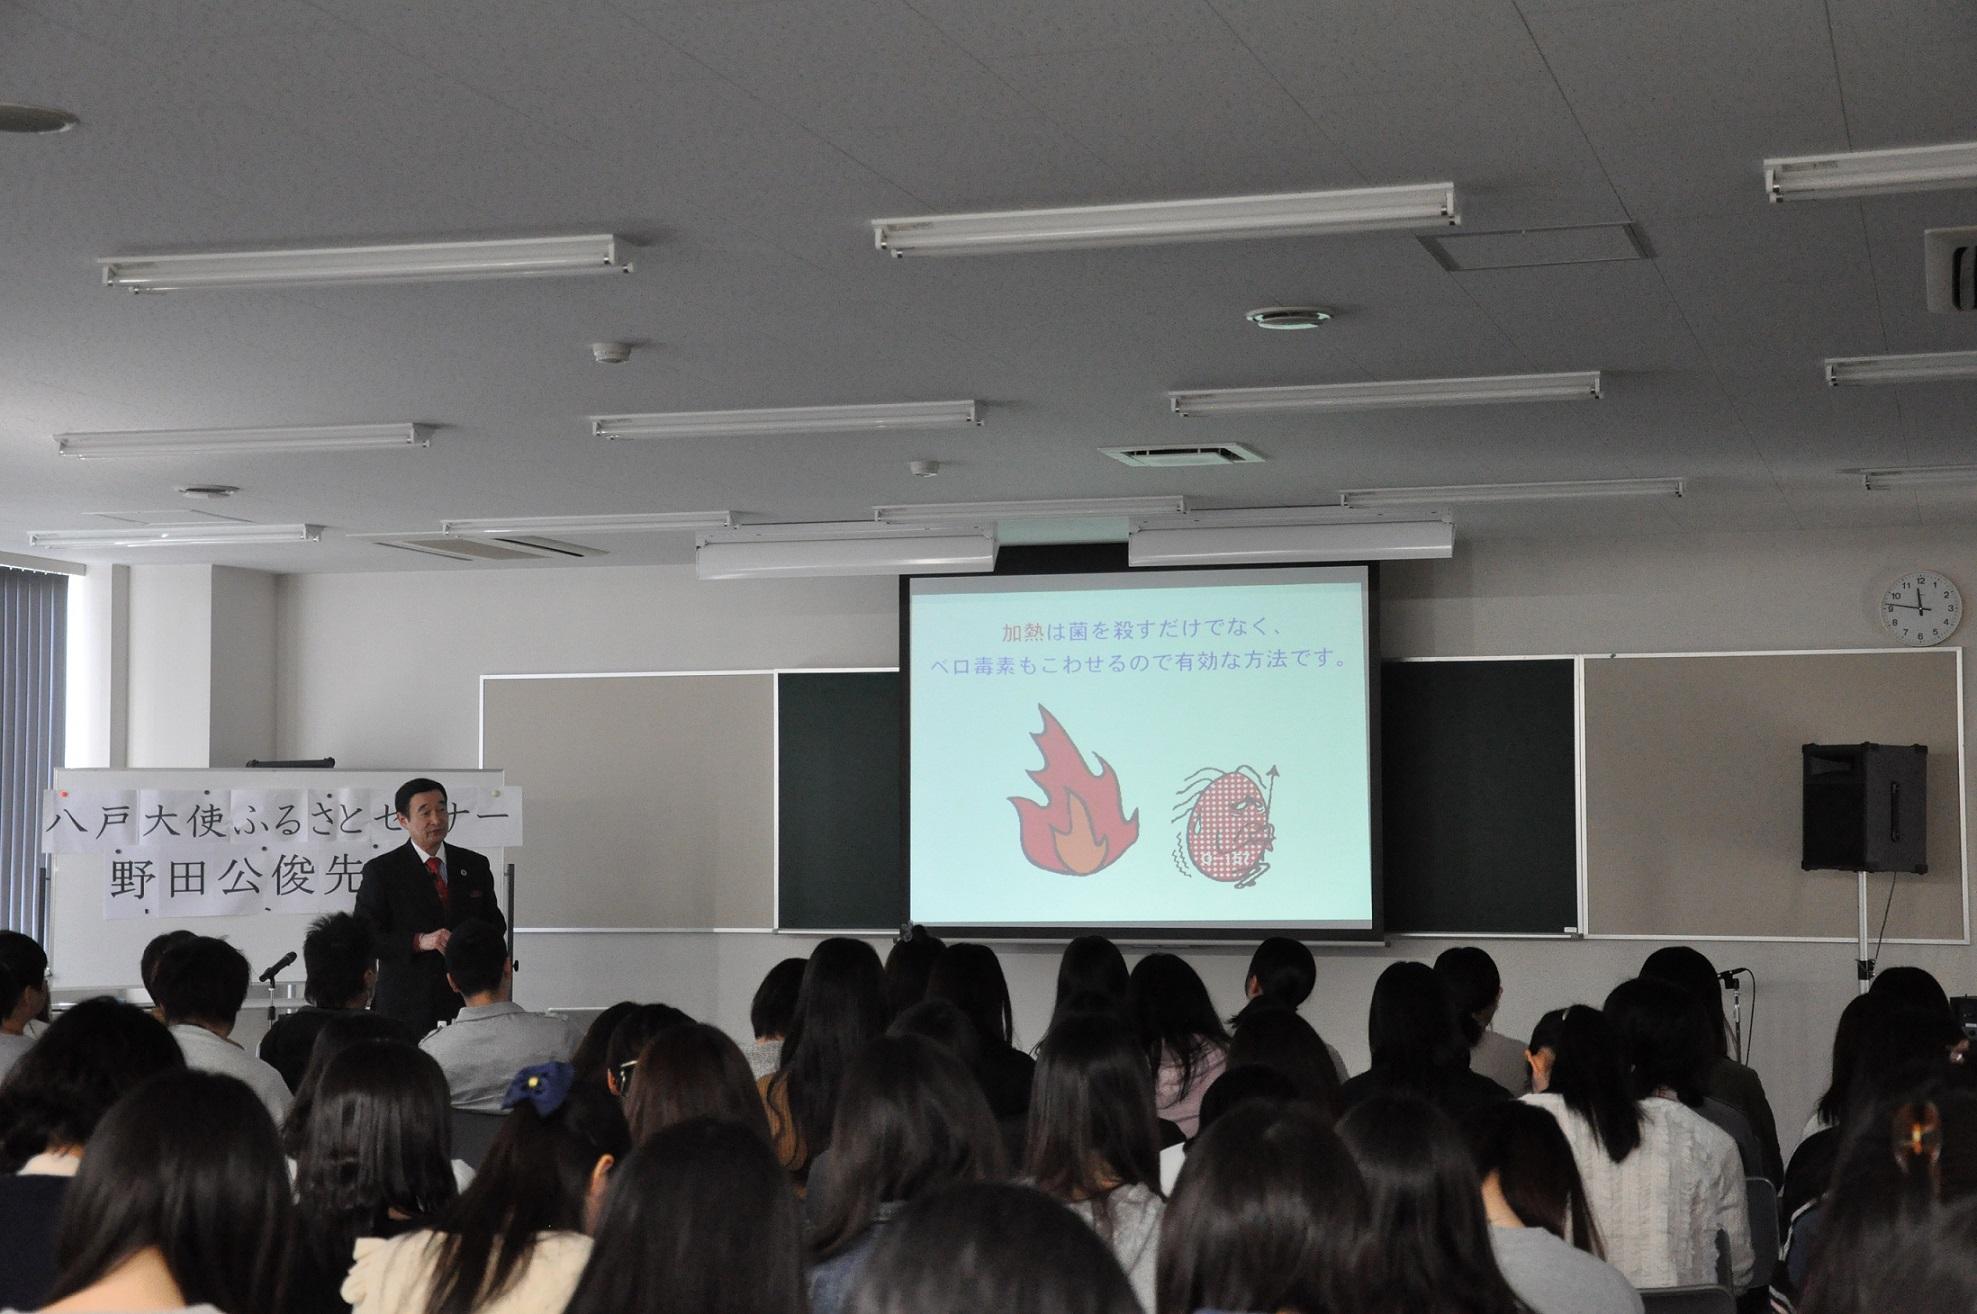 モニターに写っている画像を見ながら話をしている野田先生と、着席して話を聞いている生徒たちの後姿の写真